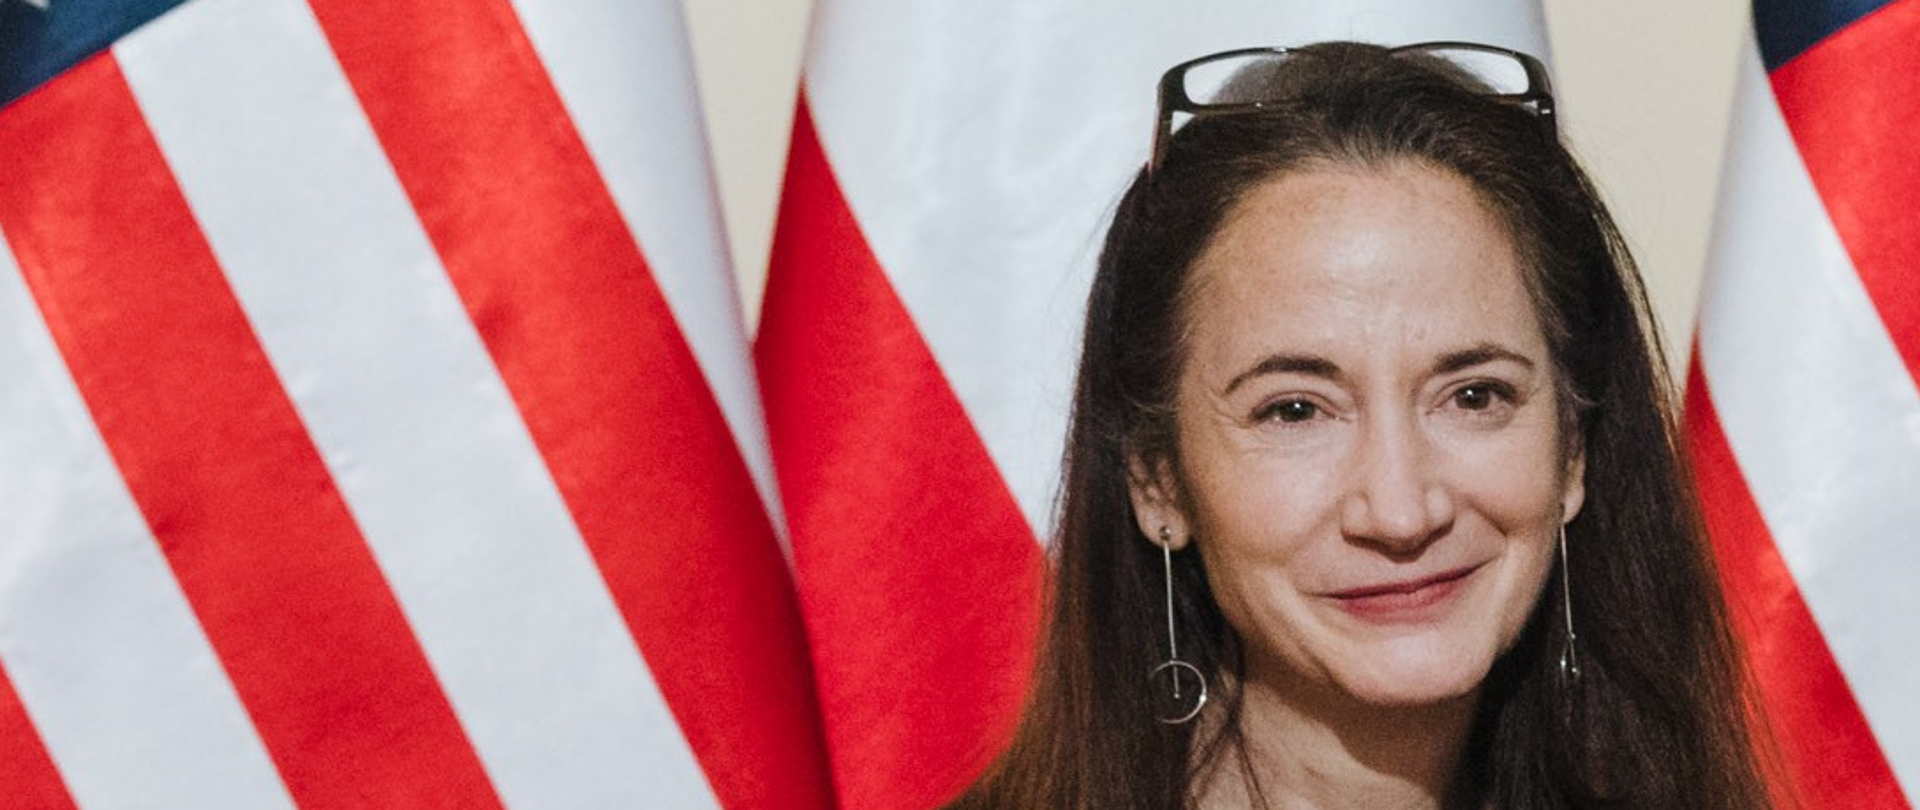 Portret uśmiechniętej kobiety z długimi rozpuszczonymi ciemnymi włosami na tle amerykańskiej i polskiej flagi